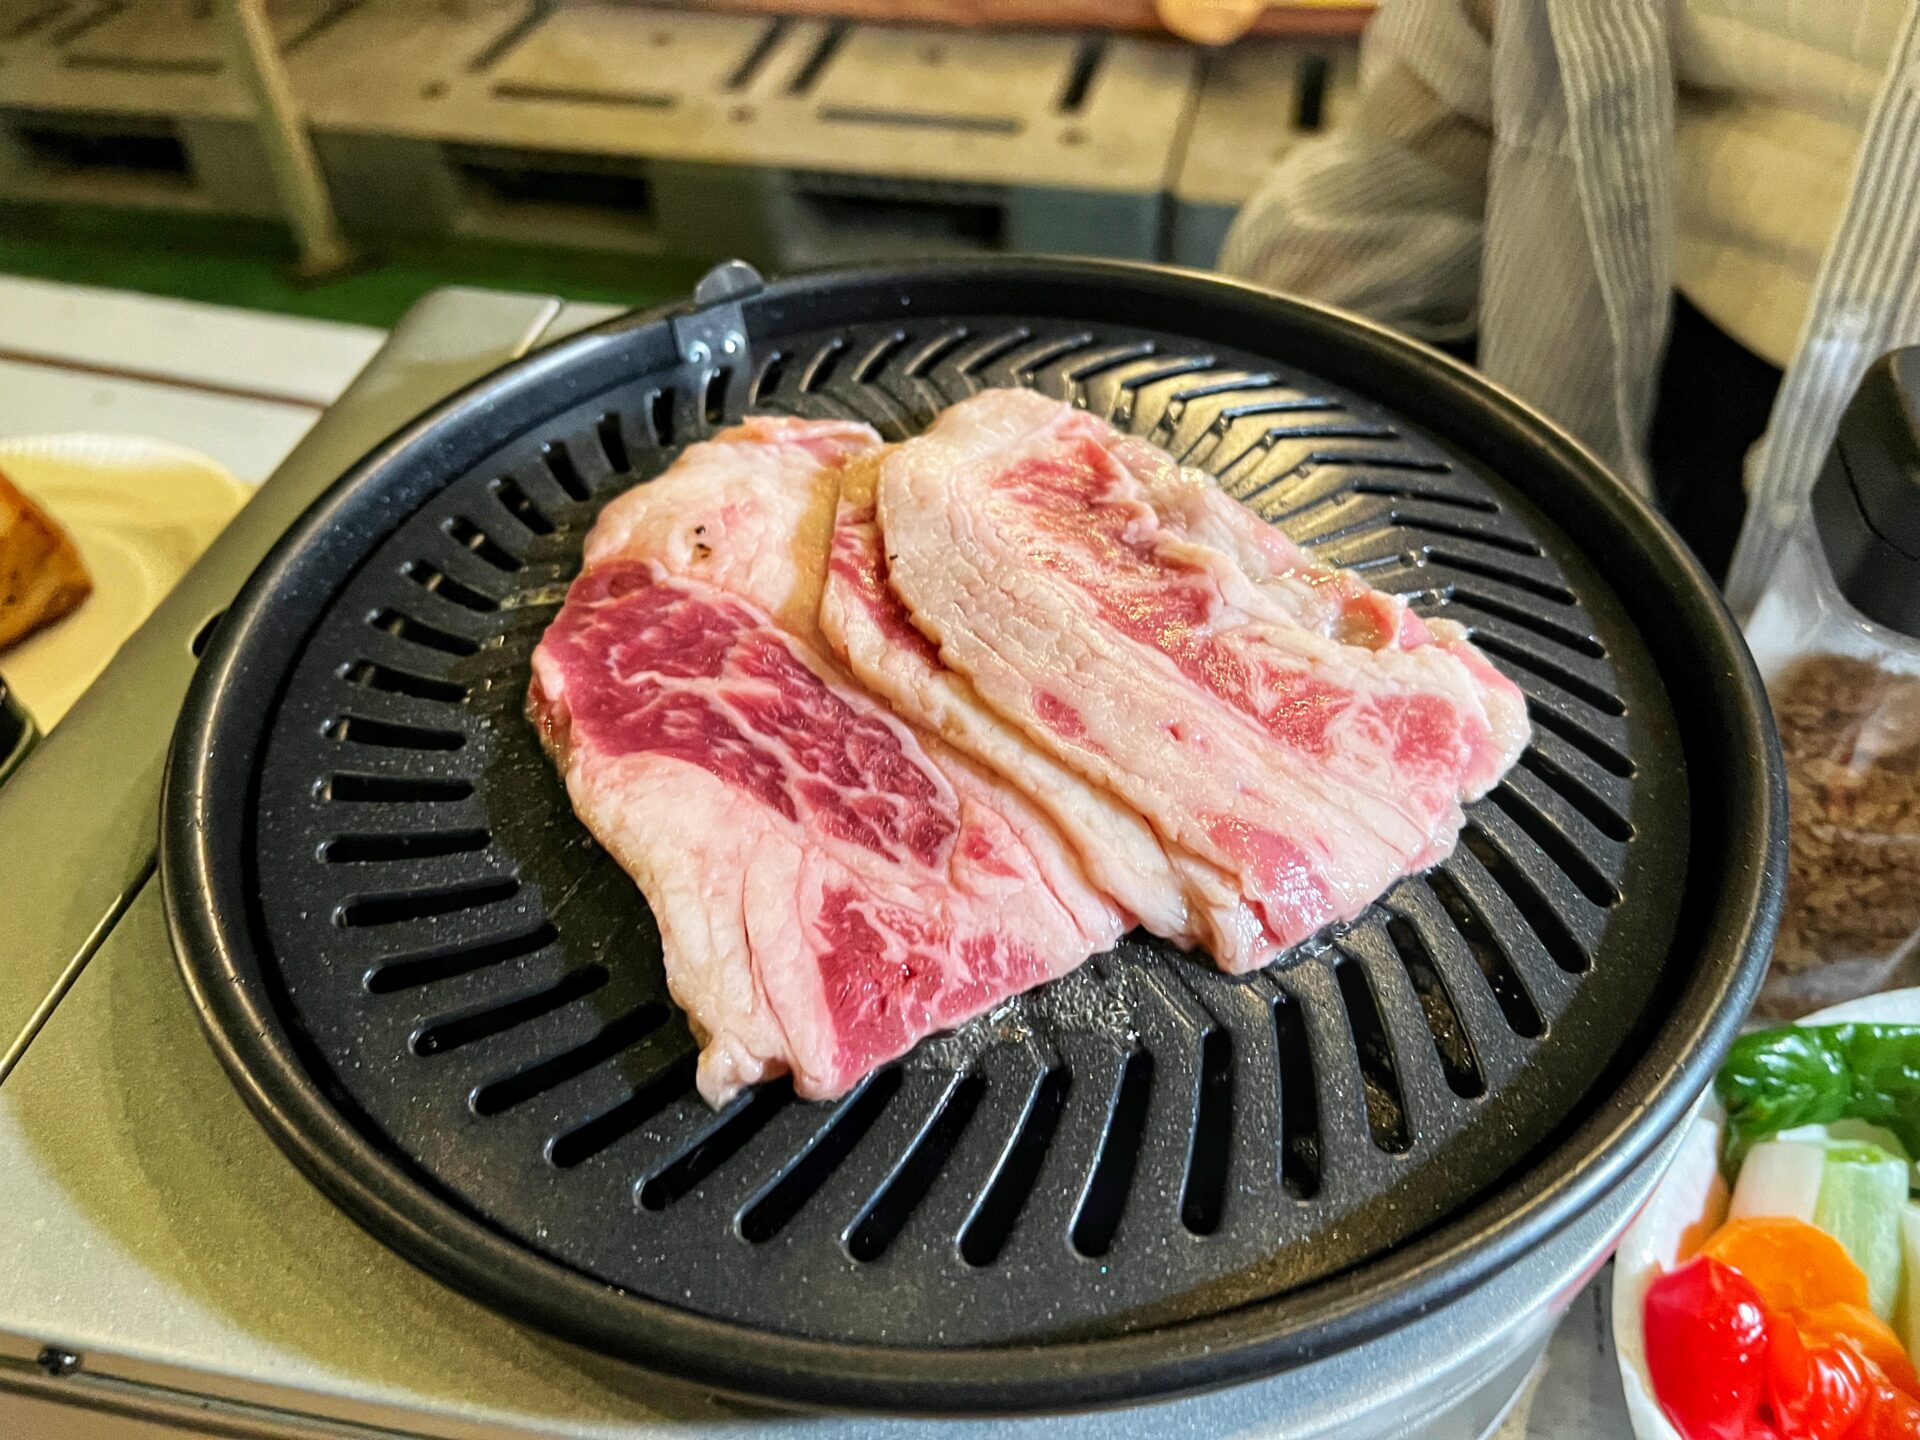 所沢市「BBQ SKY TERRACE 西武所沢S.C.店」屋上BBQにキャンプ飯!?期間限定で登場